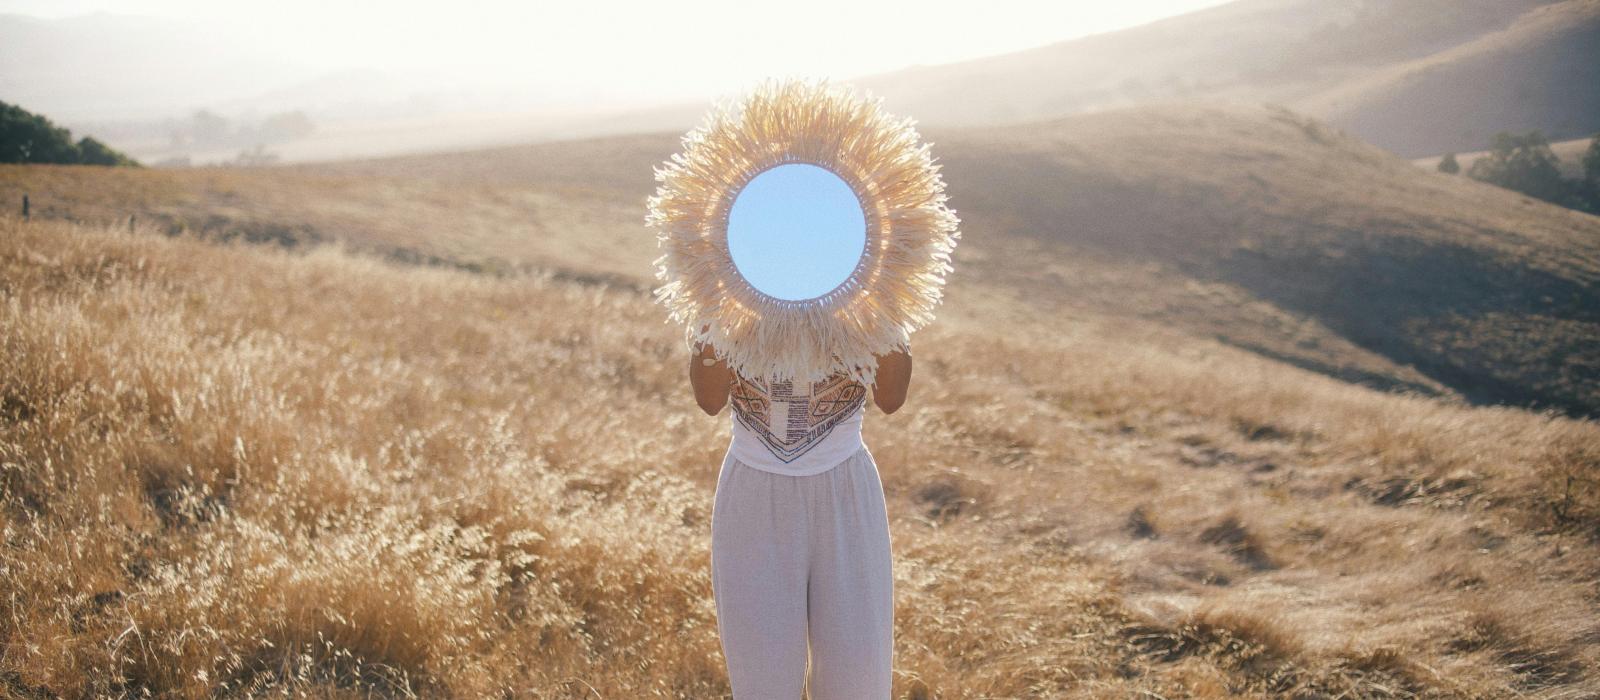 Kobieta na tle wzgórz trzyma lustro zakrywając twarz